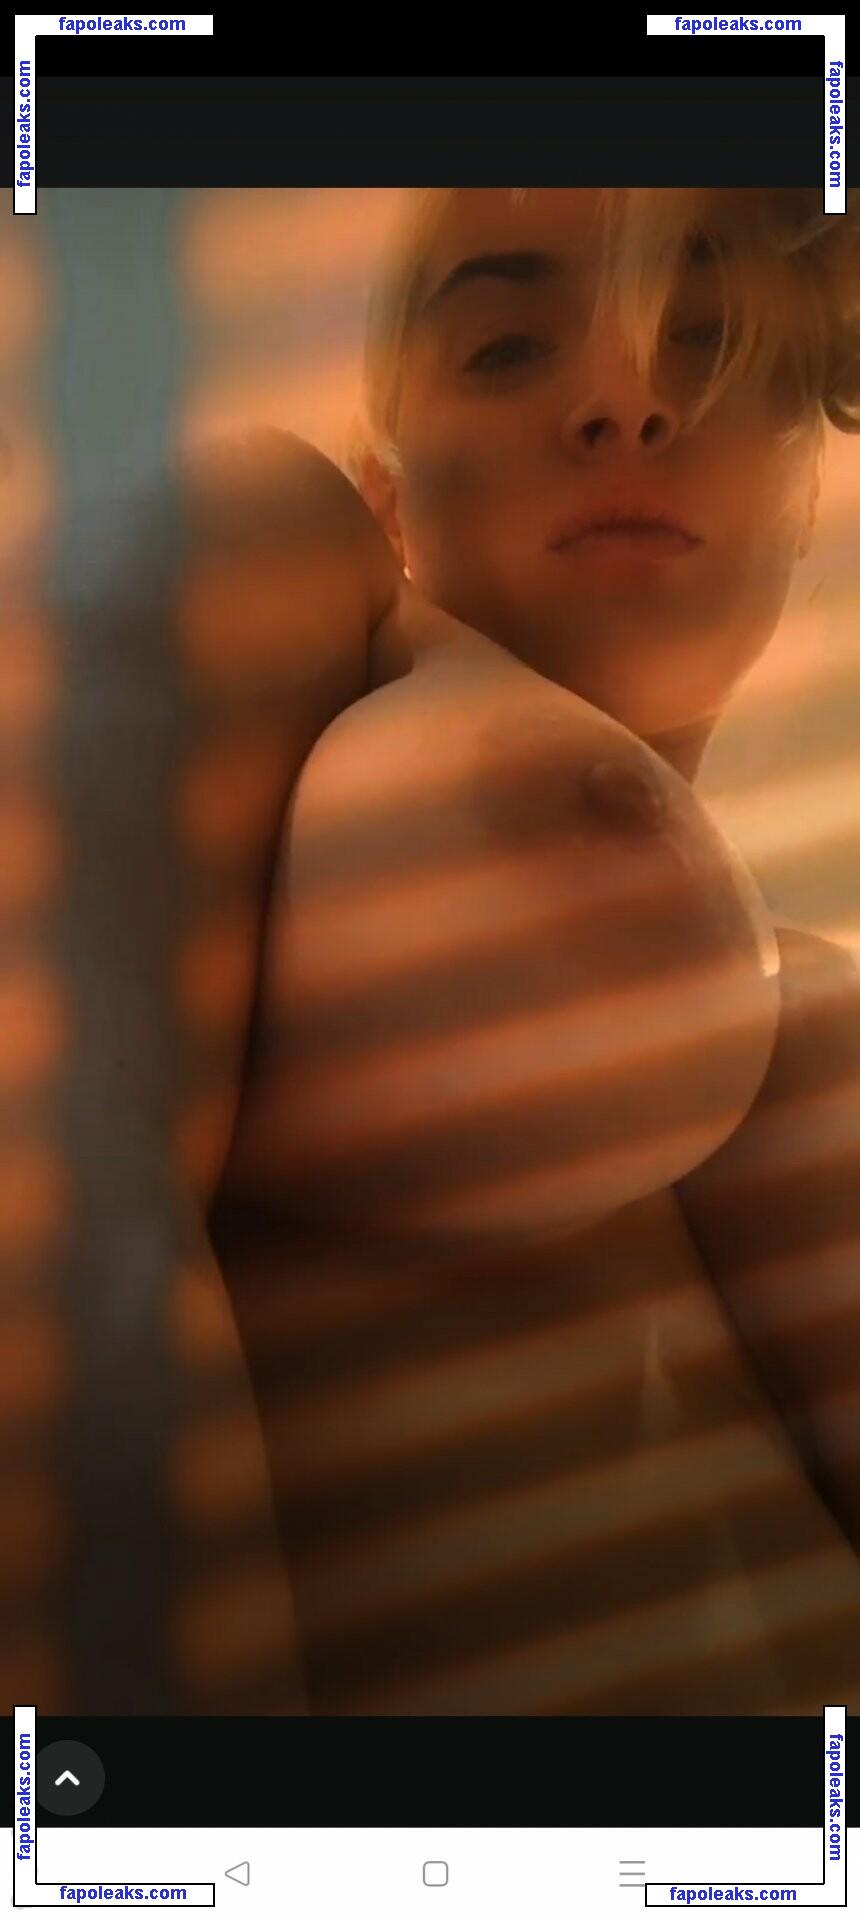 Jill Leslie Vanessa Cavnor / Jayjay / jillcavnor / jilllvc nude photo #0018 from OnlyFans